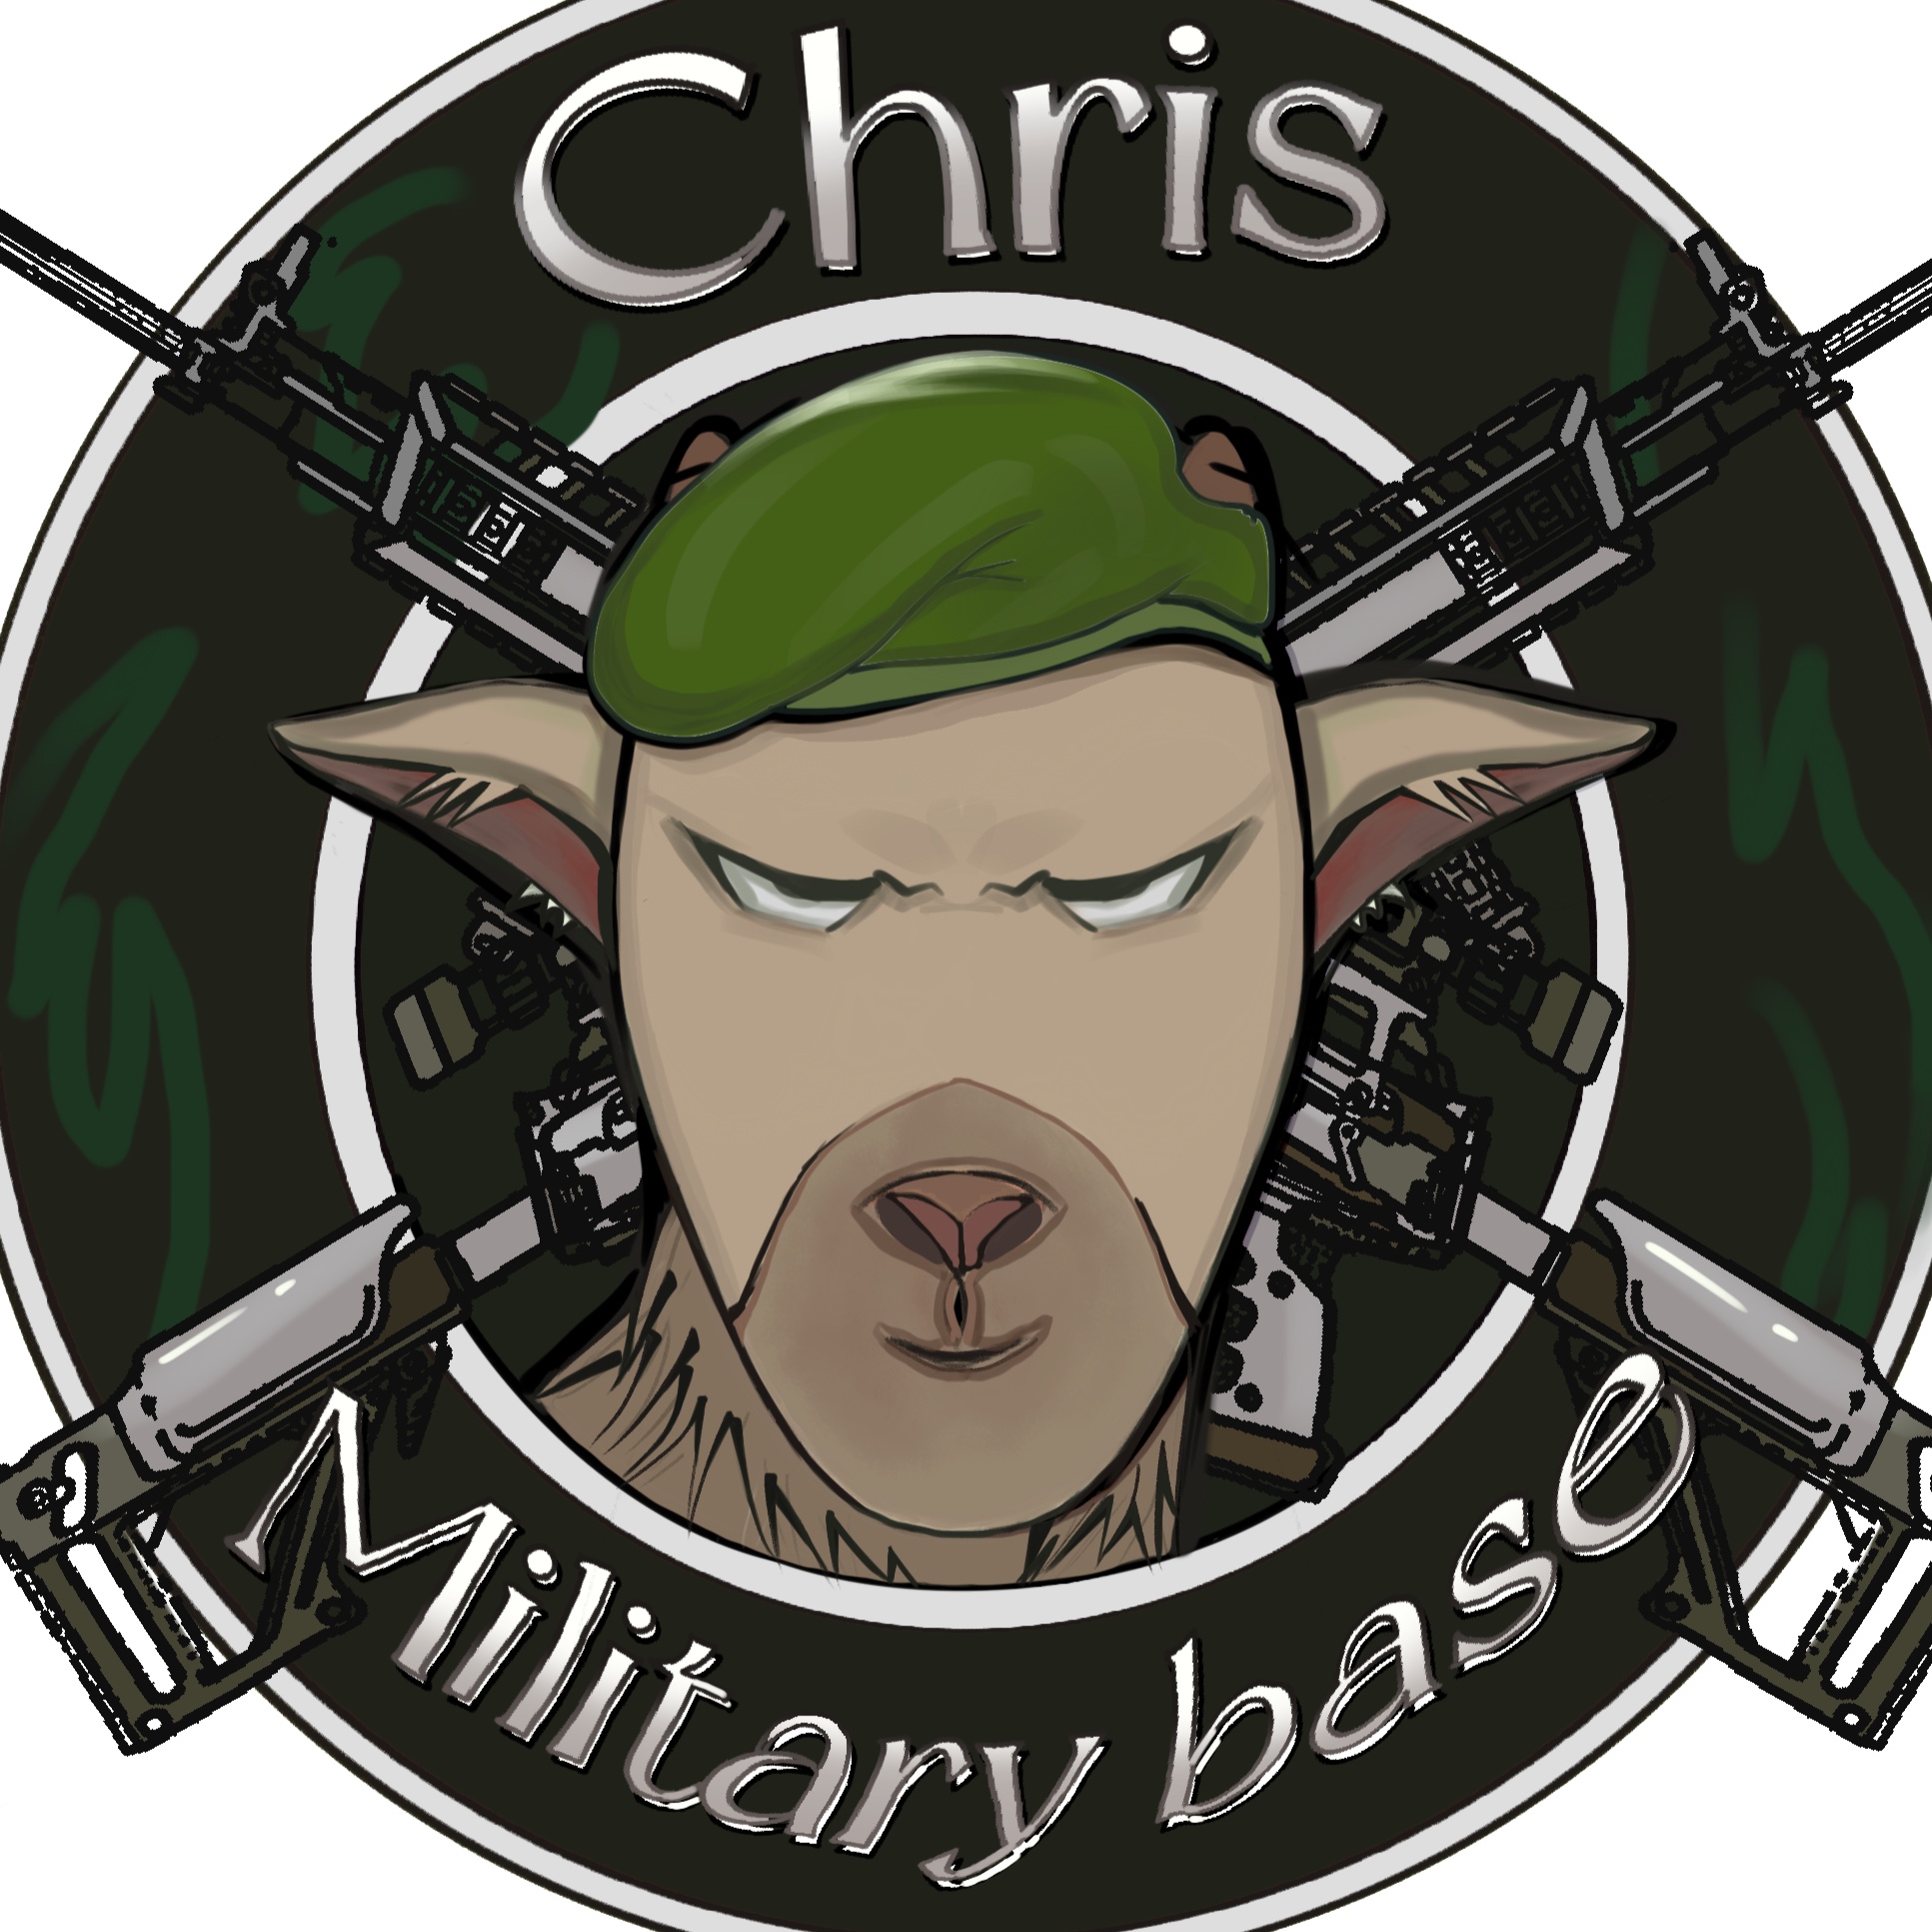 Chris的军事基地